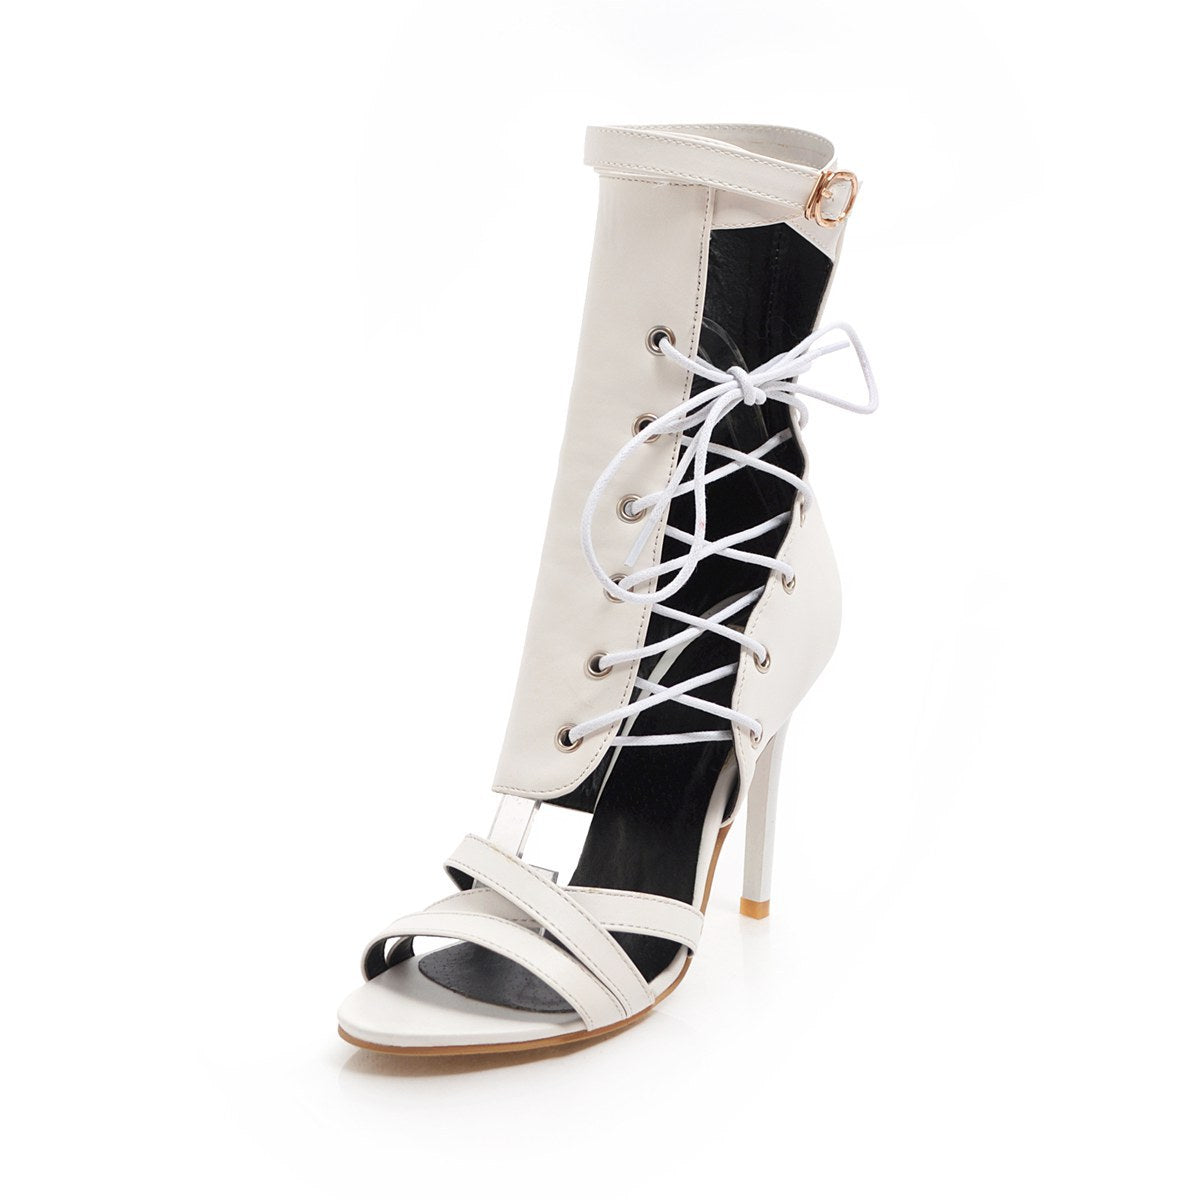 Stiletto heel sandals - ladieskits - 0